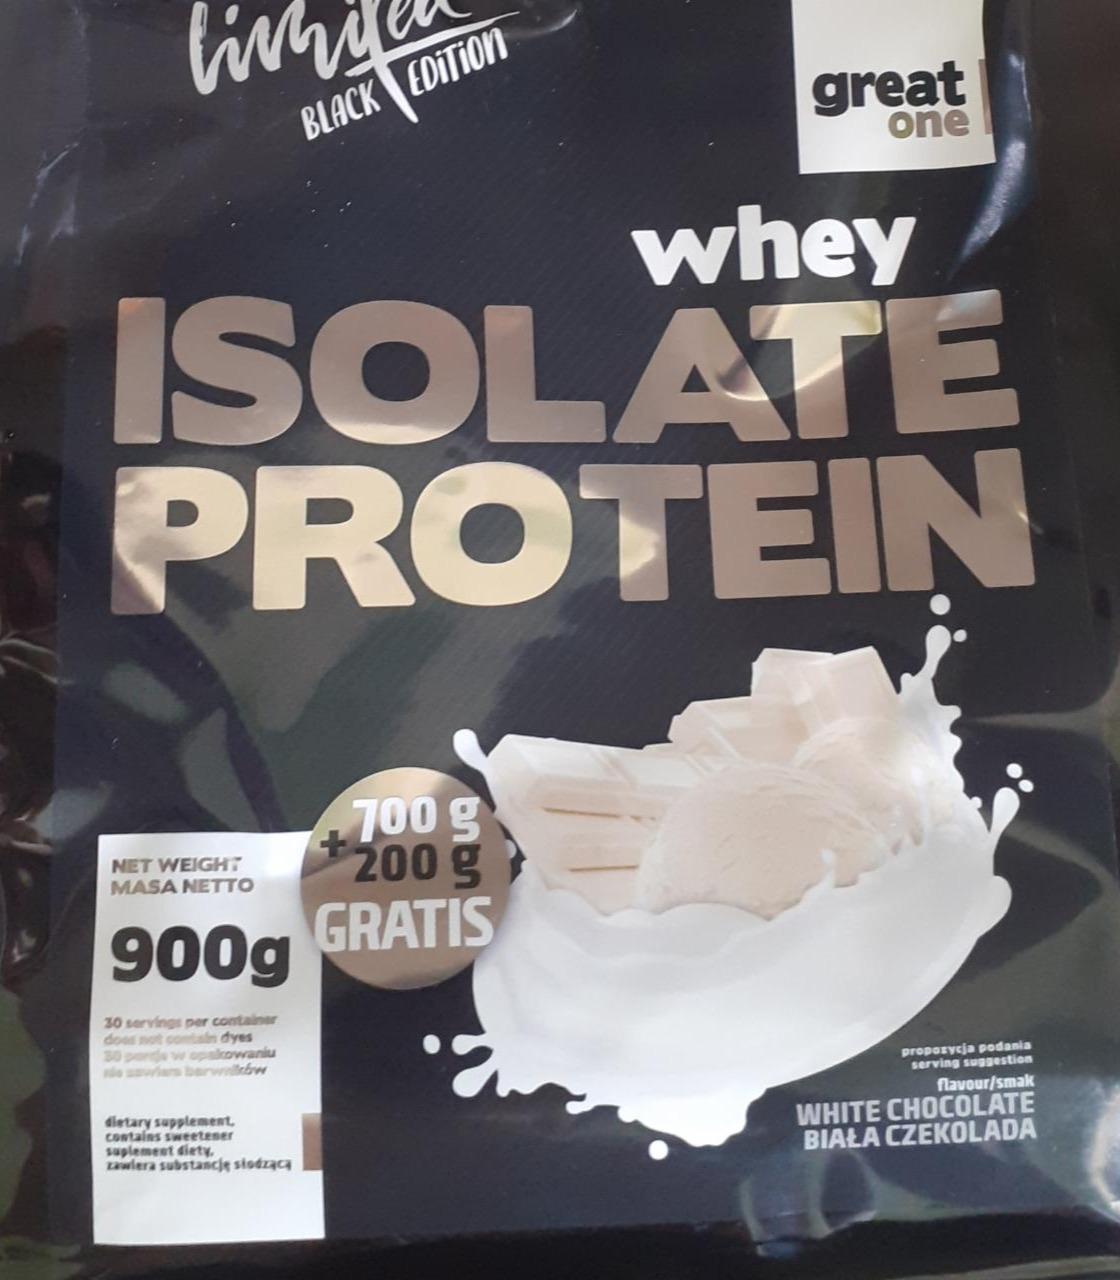 Zdjęcia - Whey isolate protein white chocolate Great One